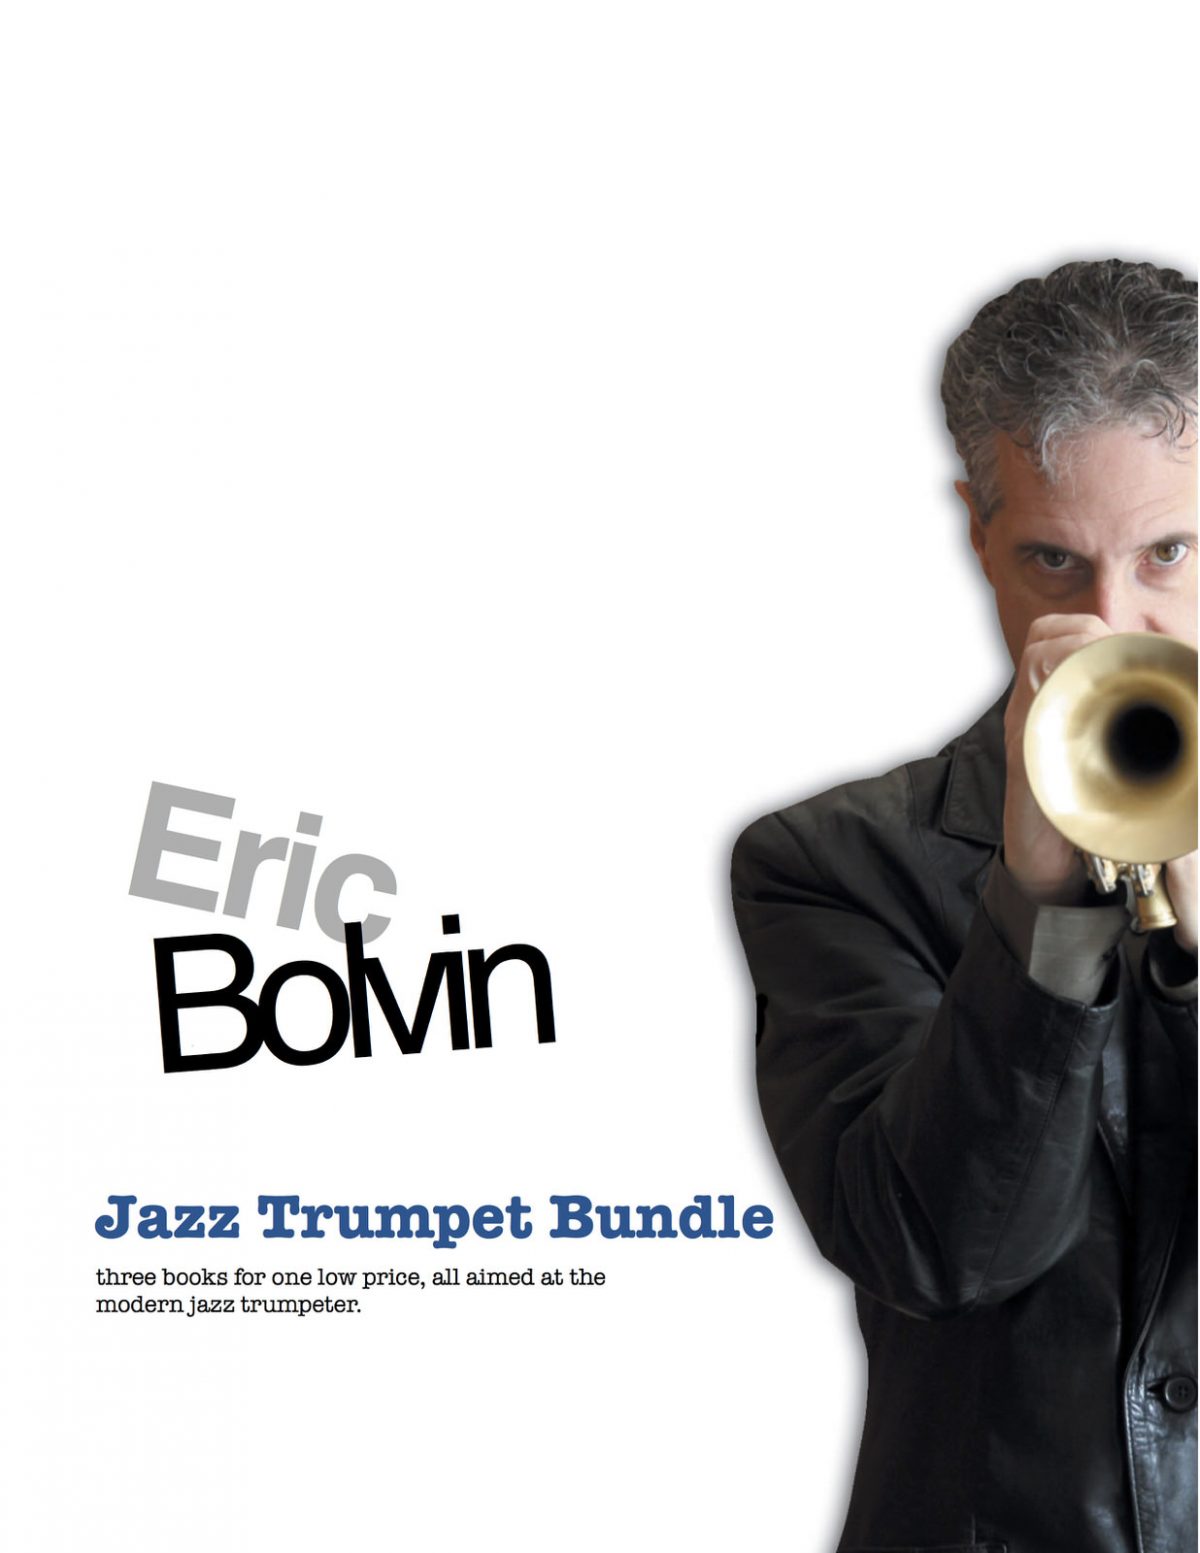 Jazz Bundle